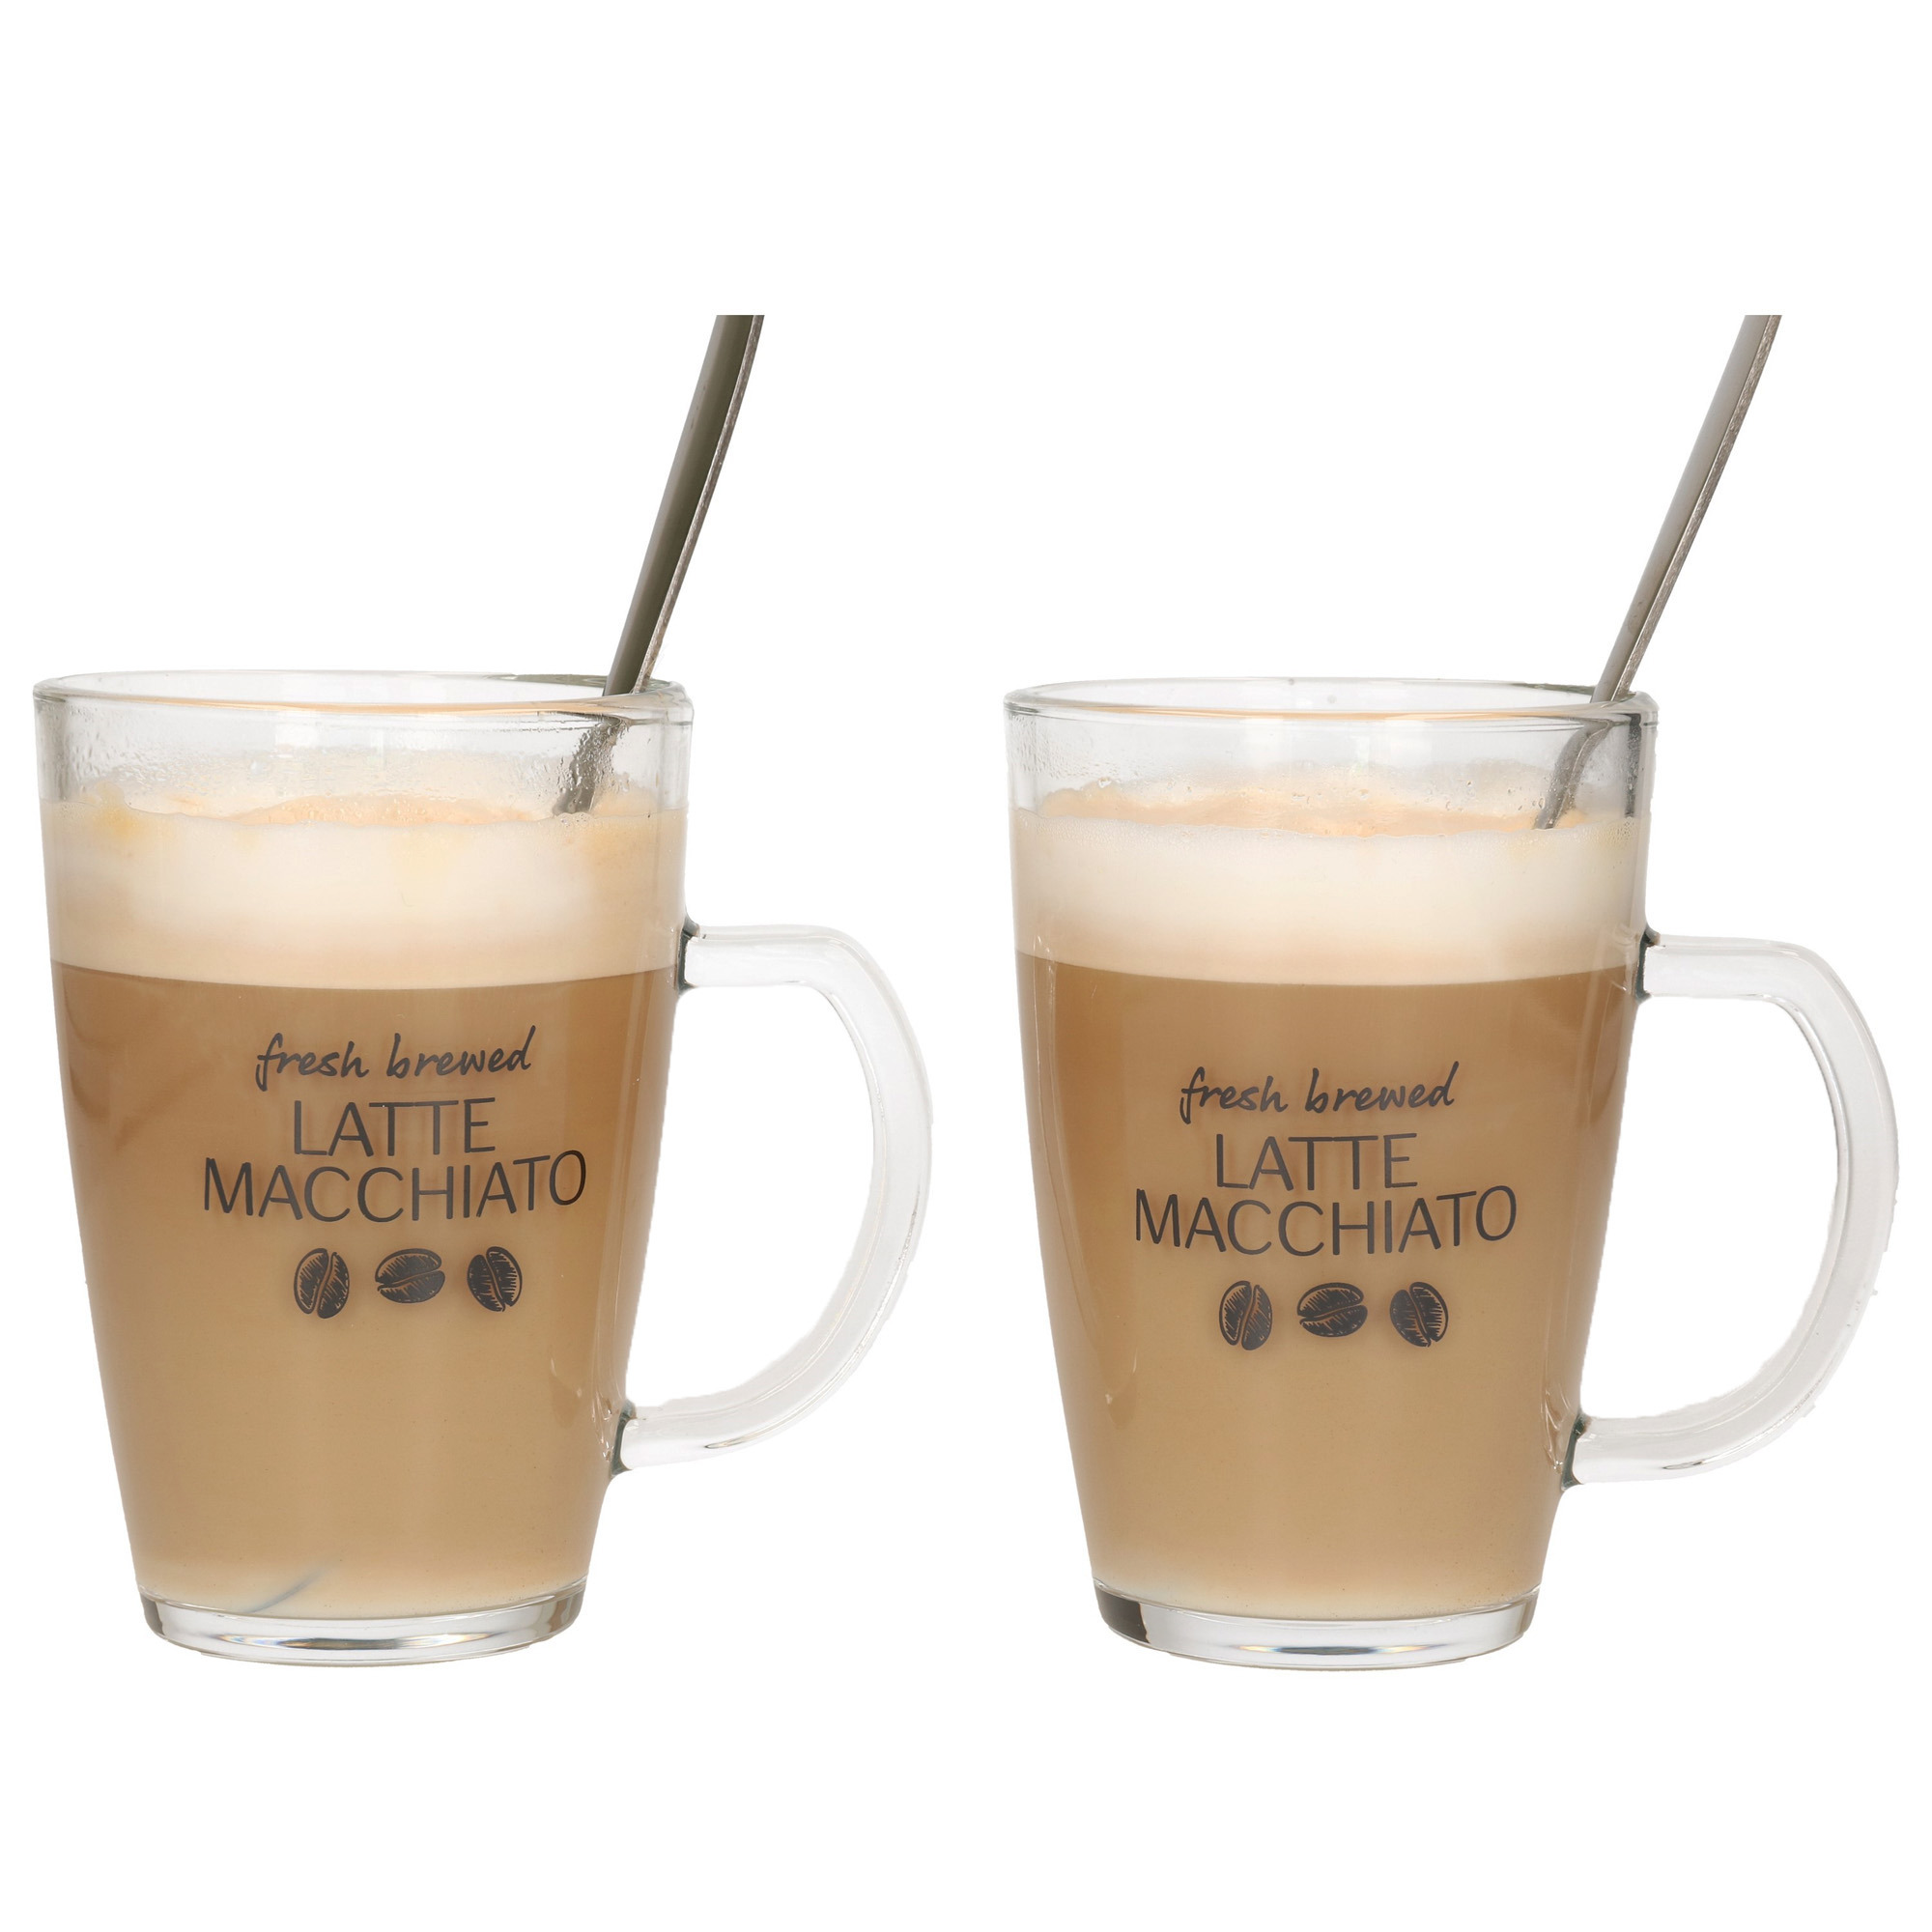 Latte macchiato glazen set 2x incl. lepels glas 300 ml koffie glazen